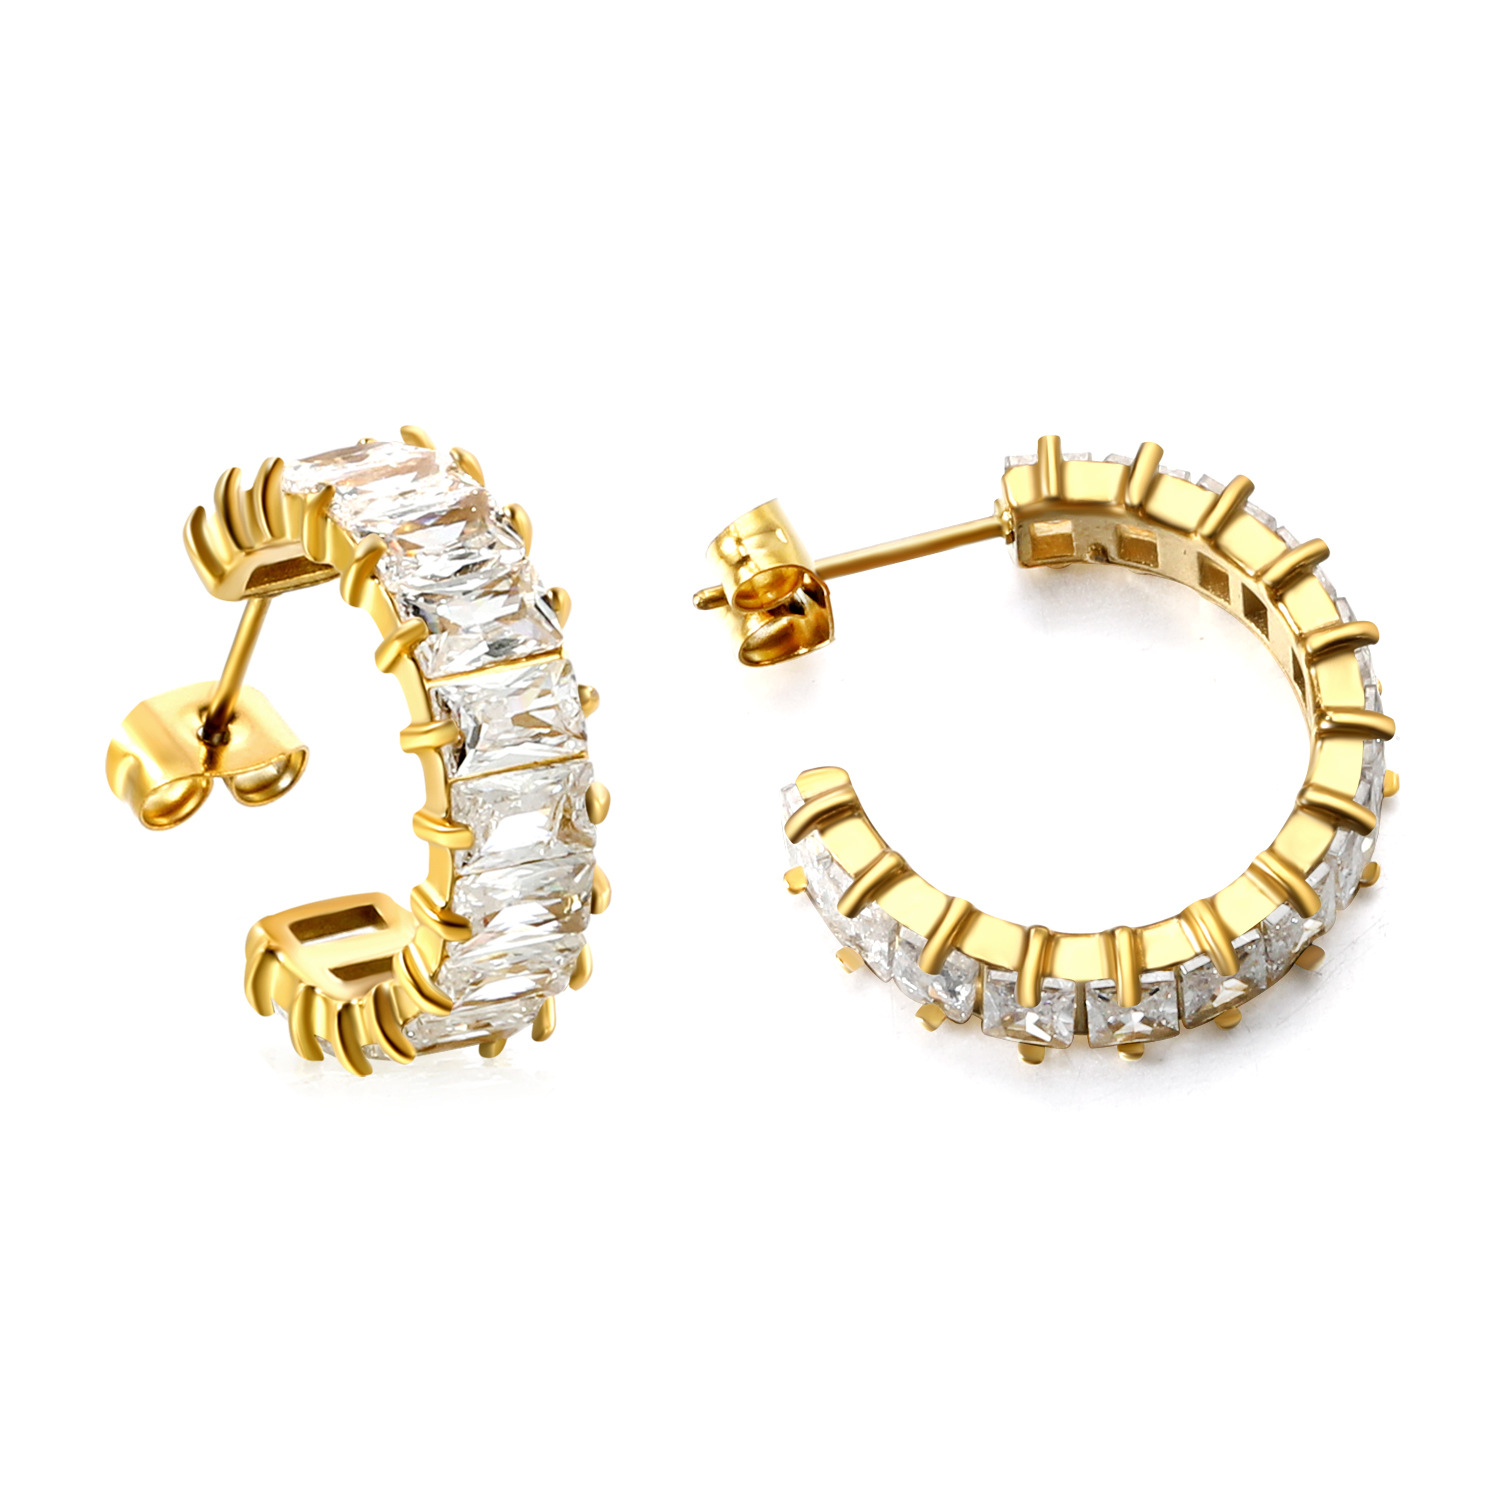 2:White diamond earrings, gold